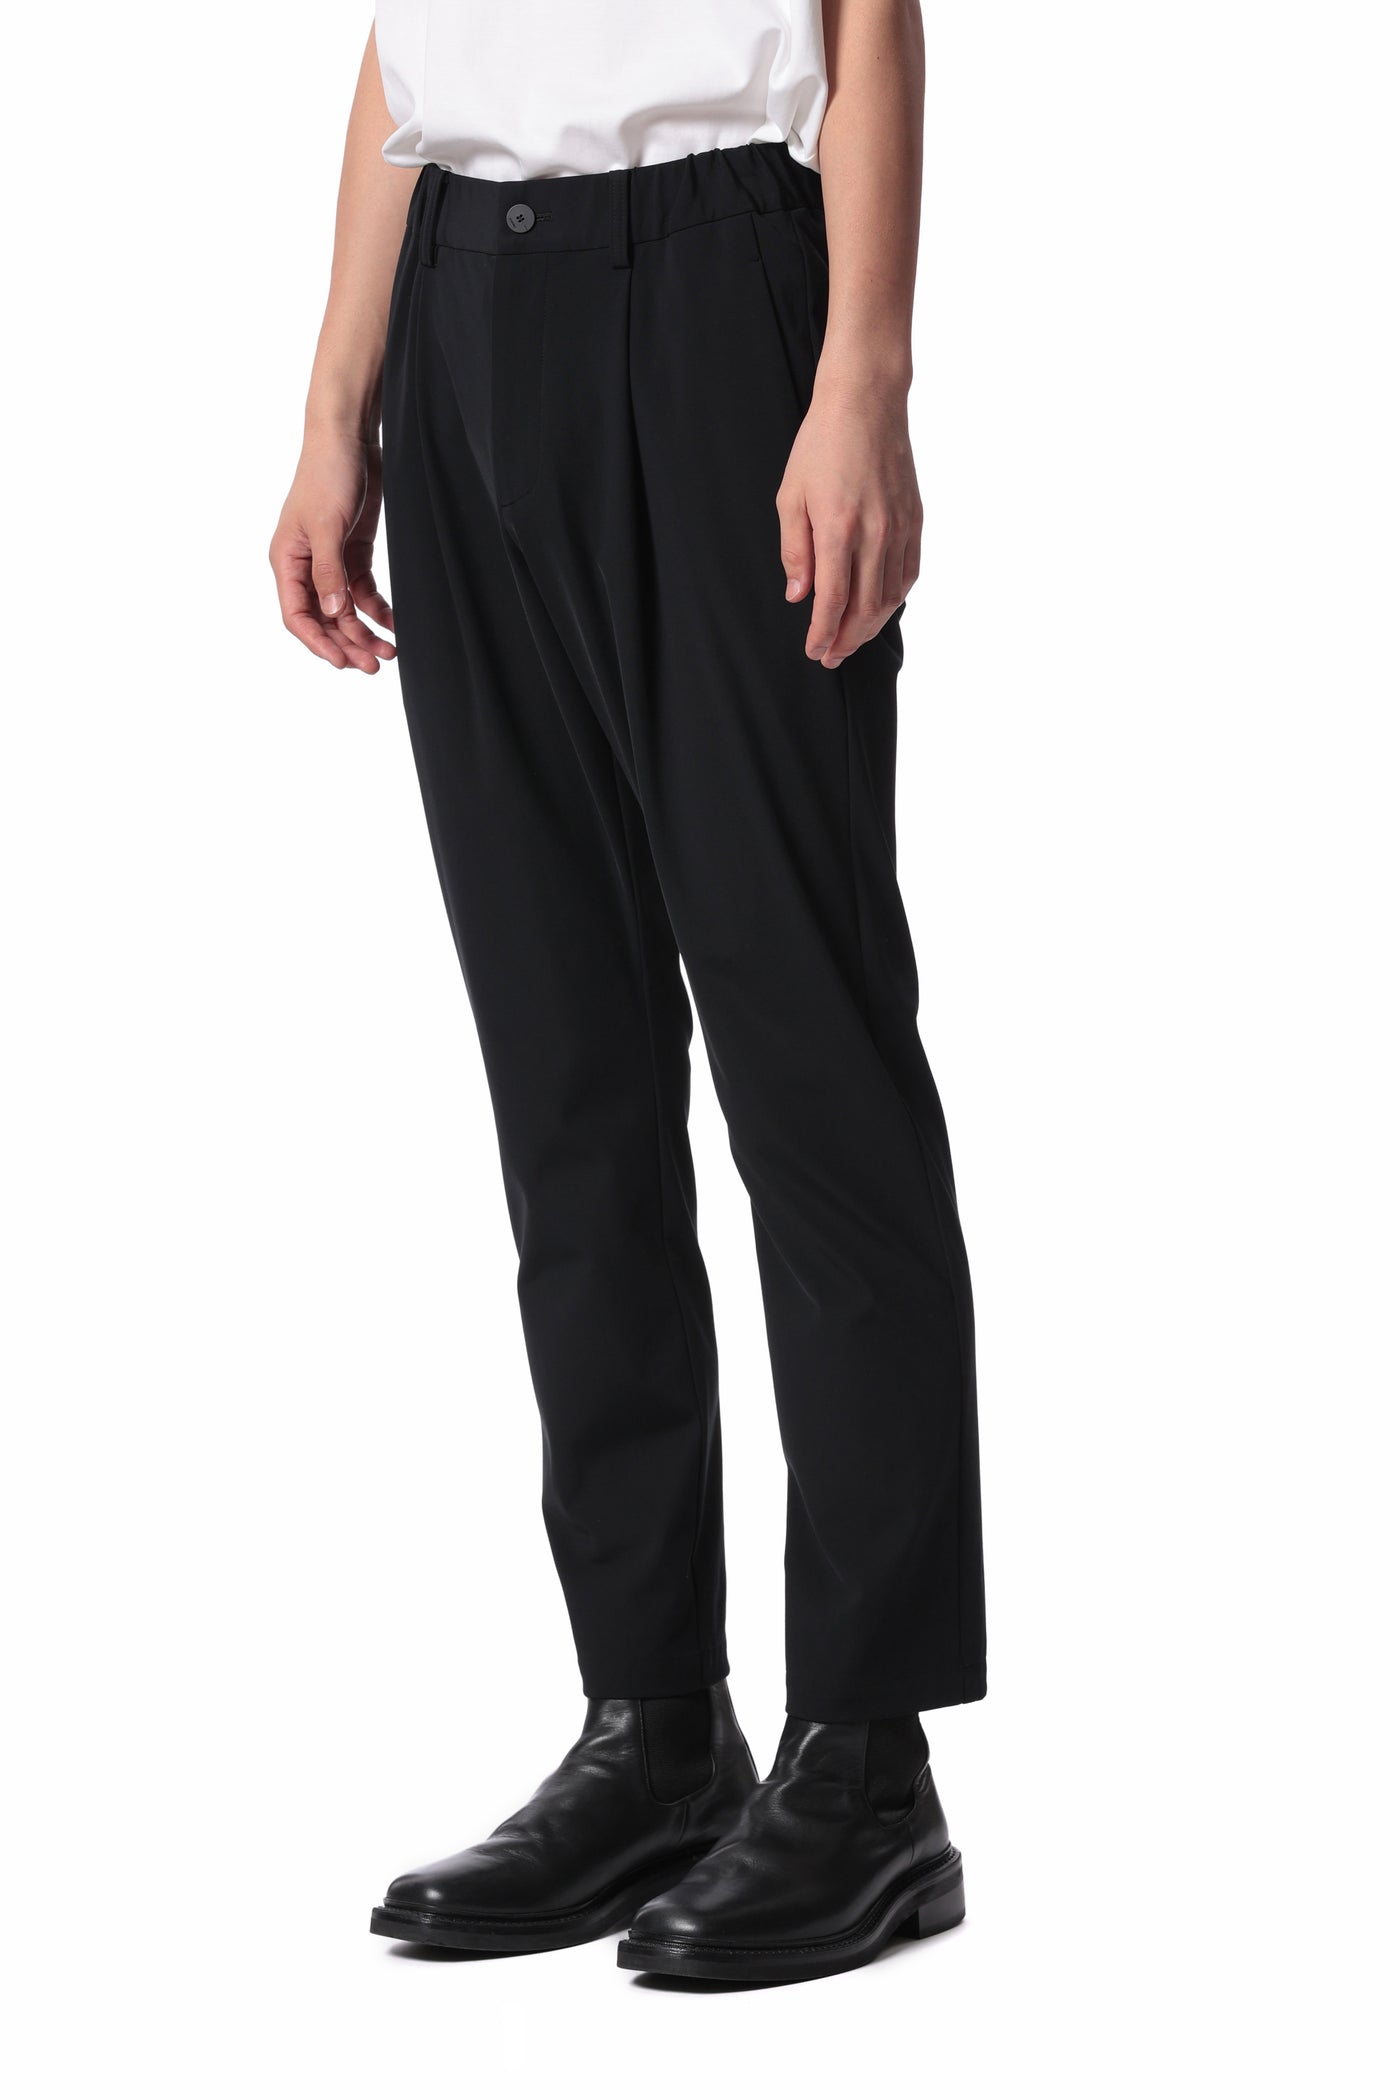 2月发布 AP41-021 尼龙/棉弹力针织常规版型休闲裤